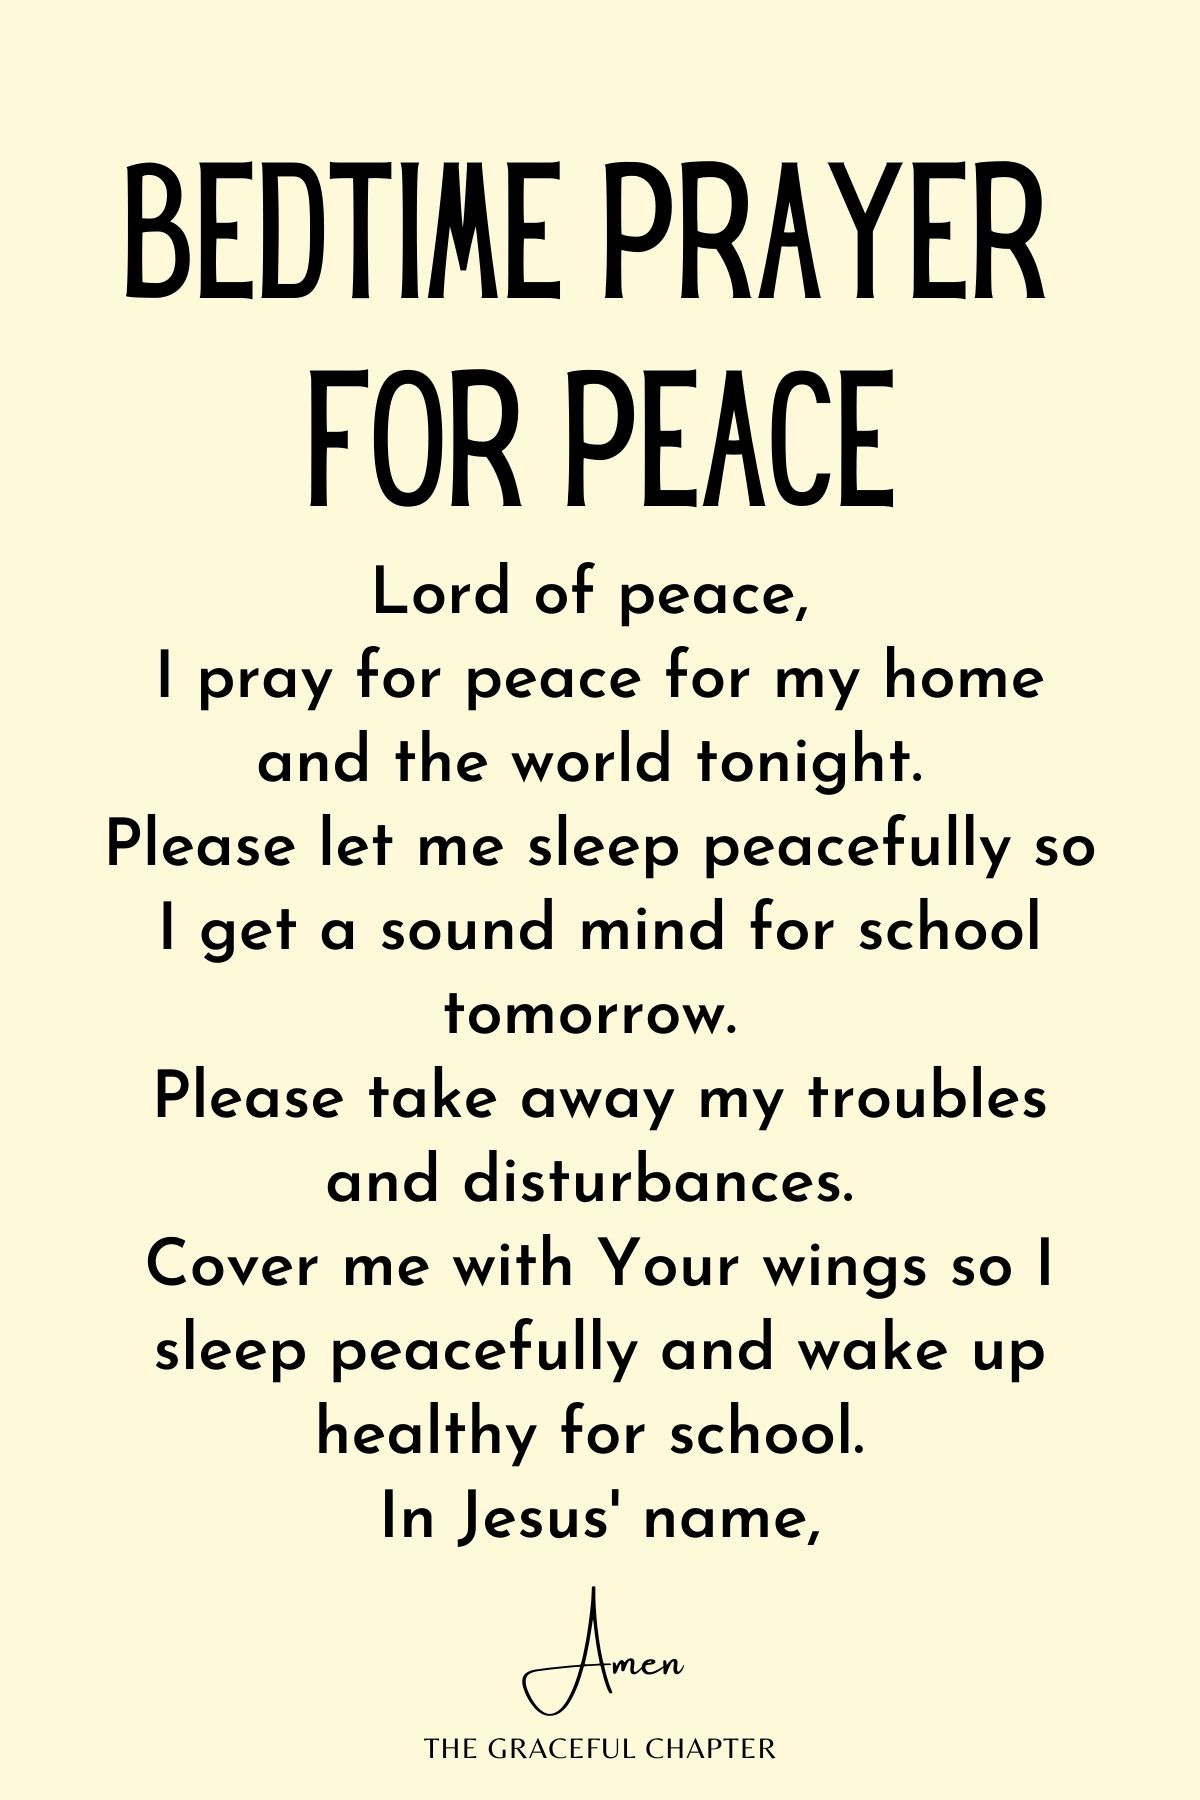 Bedtime prayer for peace